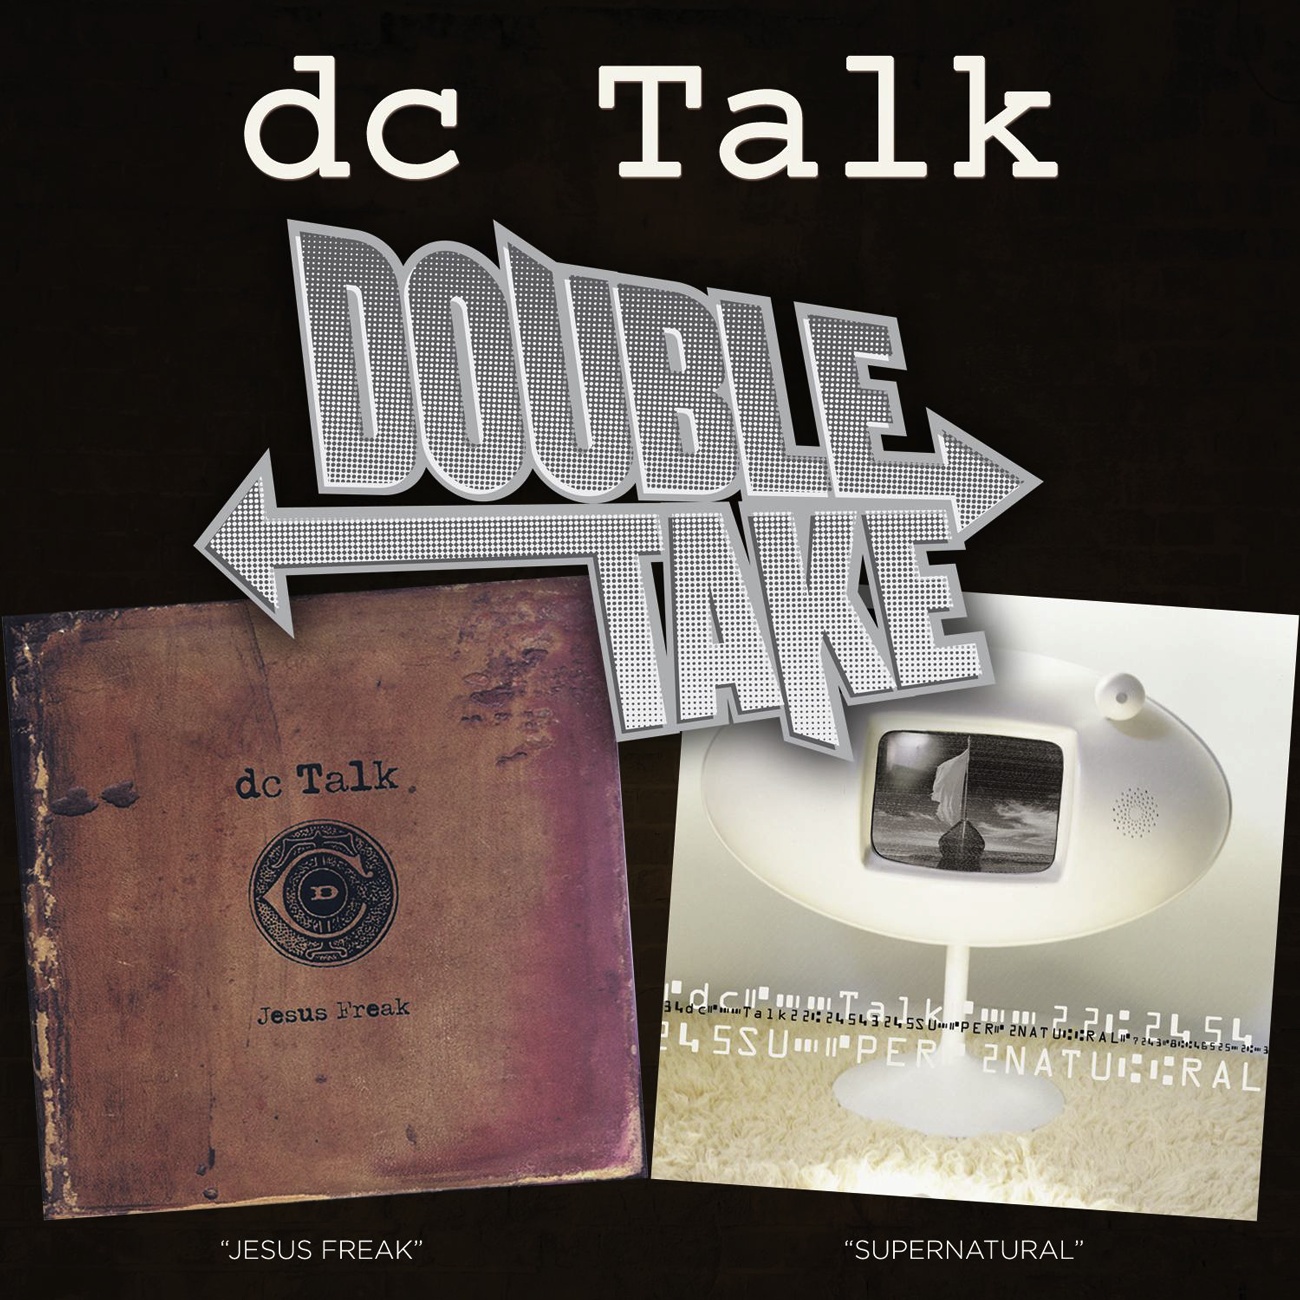 Double Take - DC Talk